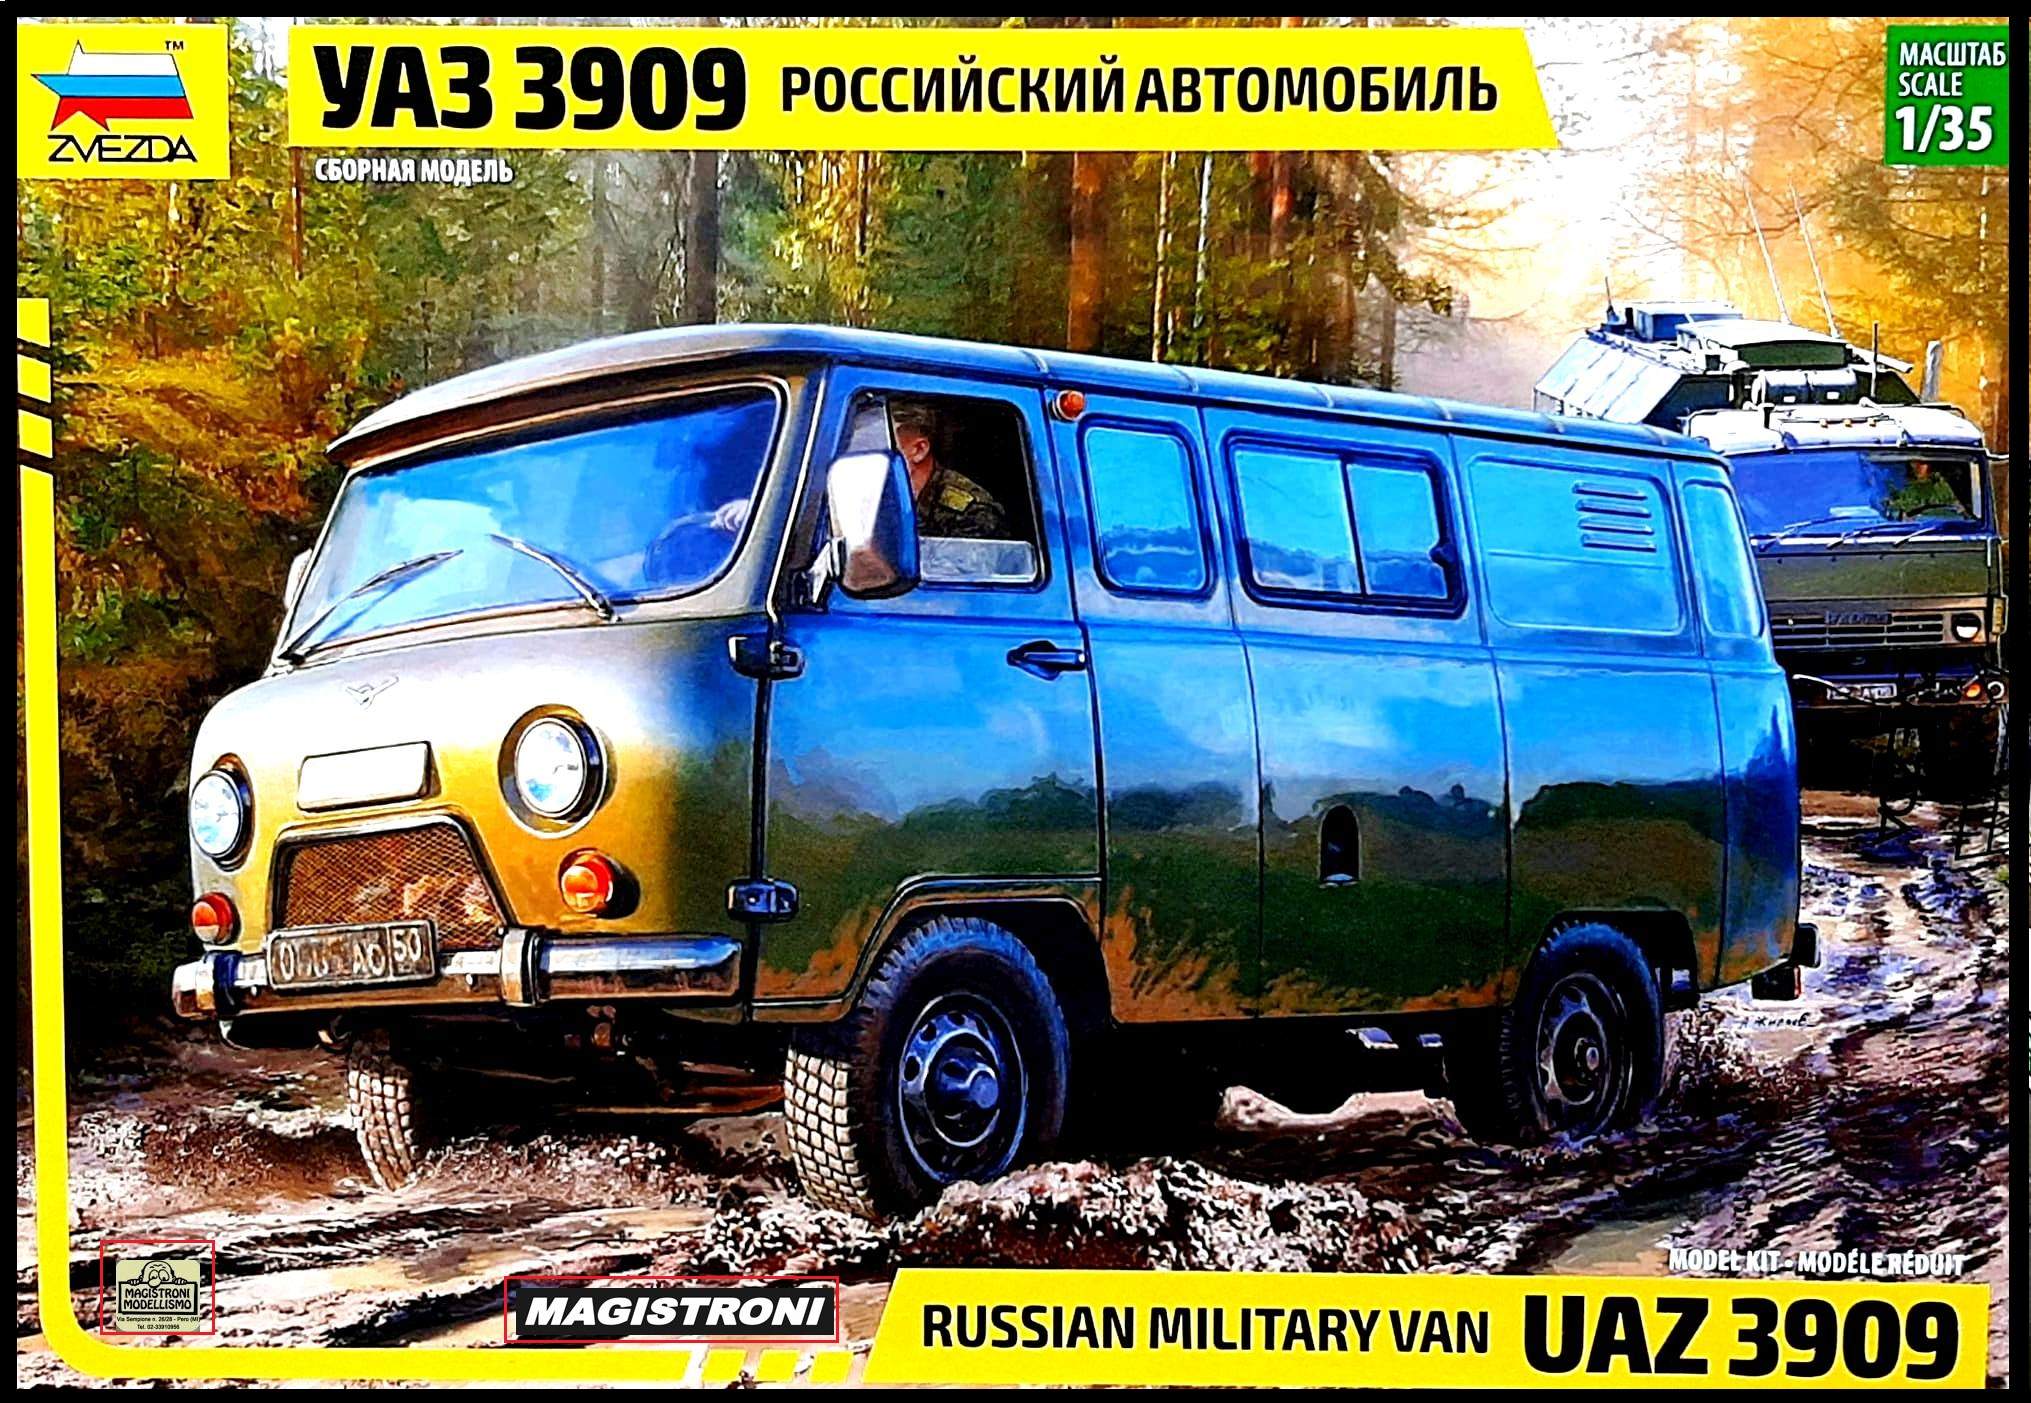 RUSSIAN MILITARY VAN UAZ 3909